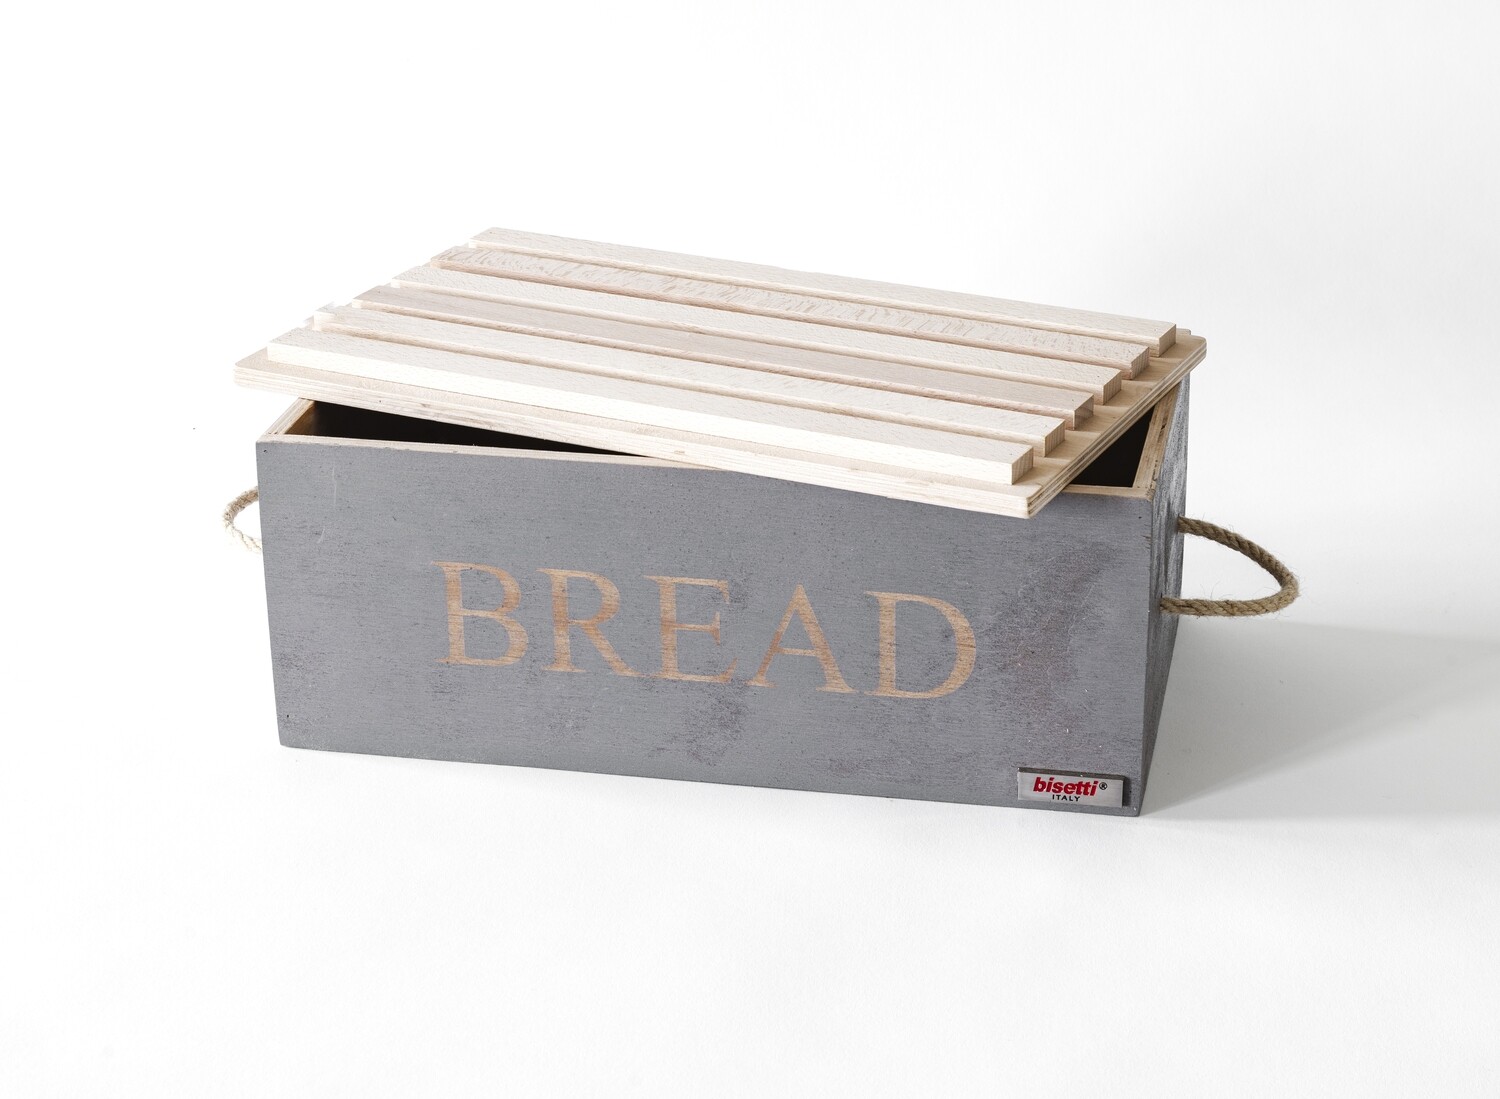 Cassetta pane legno con tagliere coperchio
"PIERRE GOURMET"